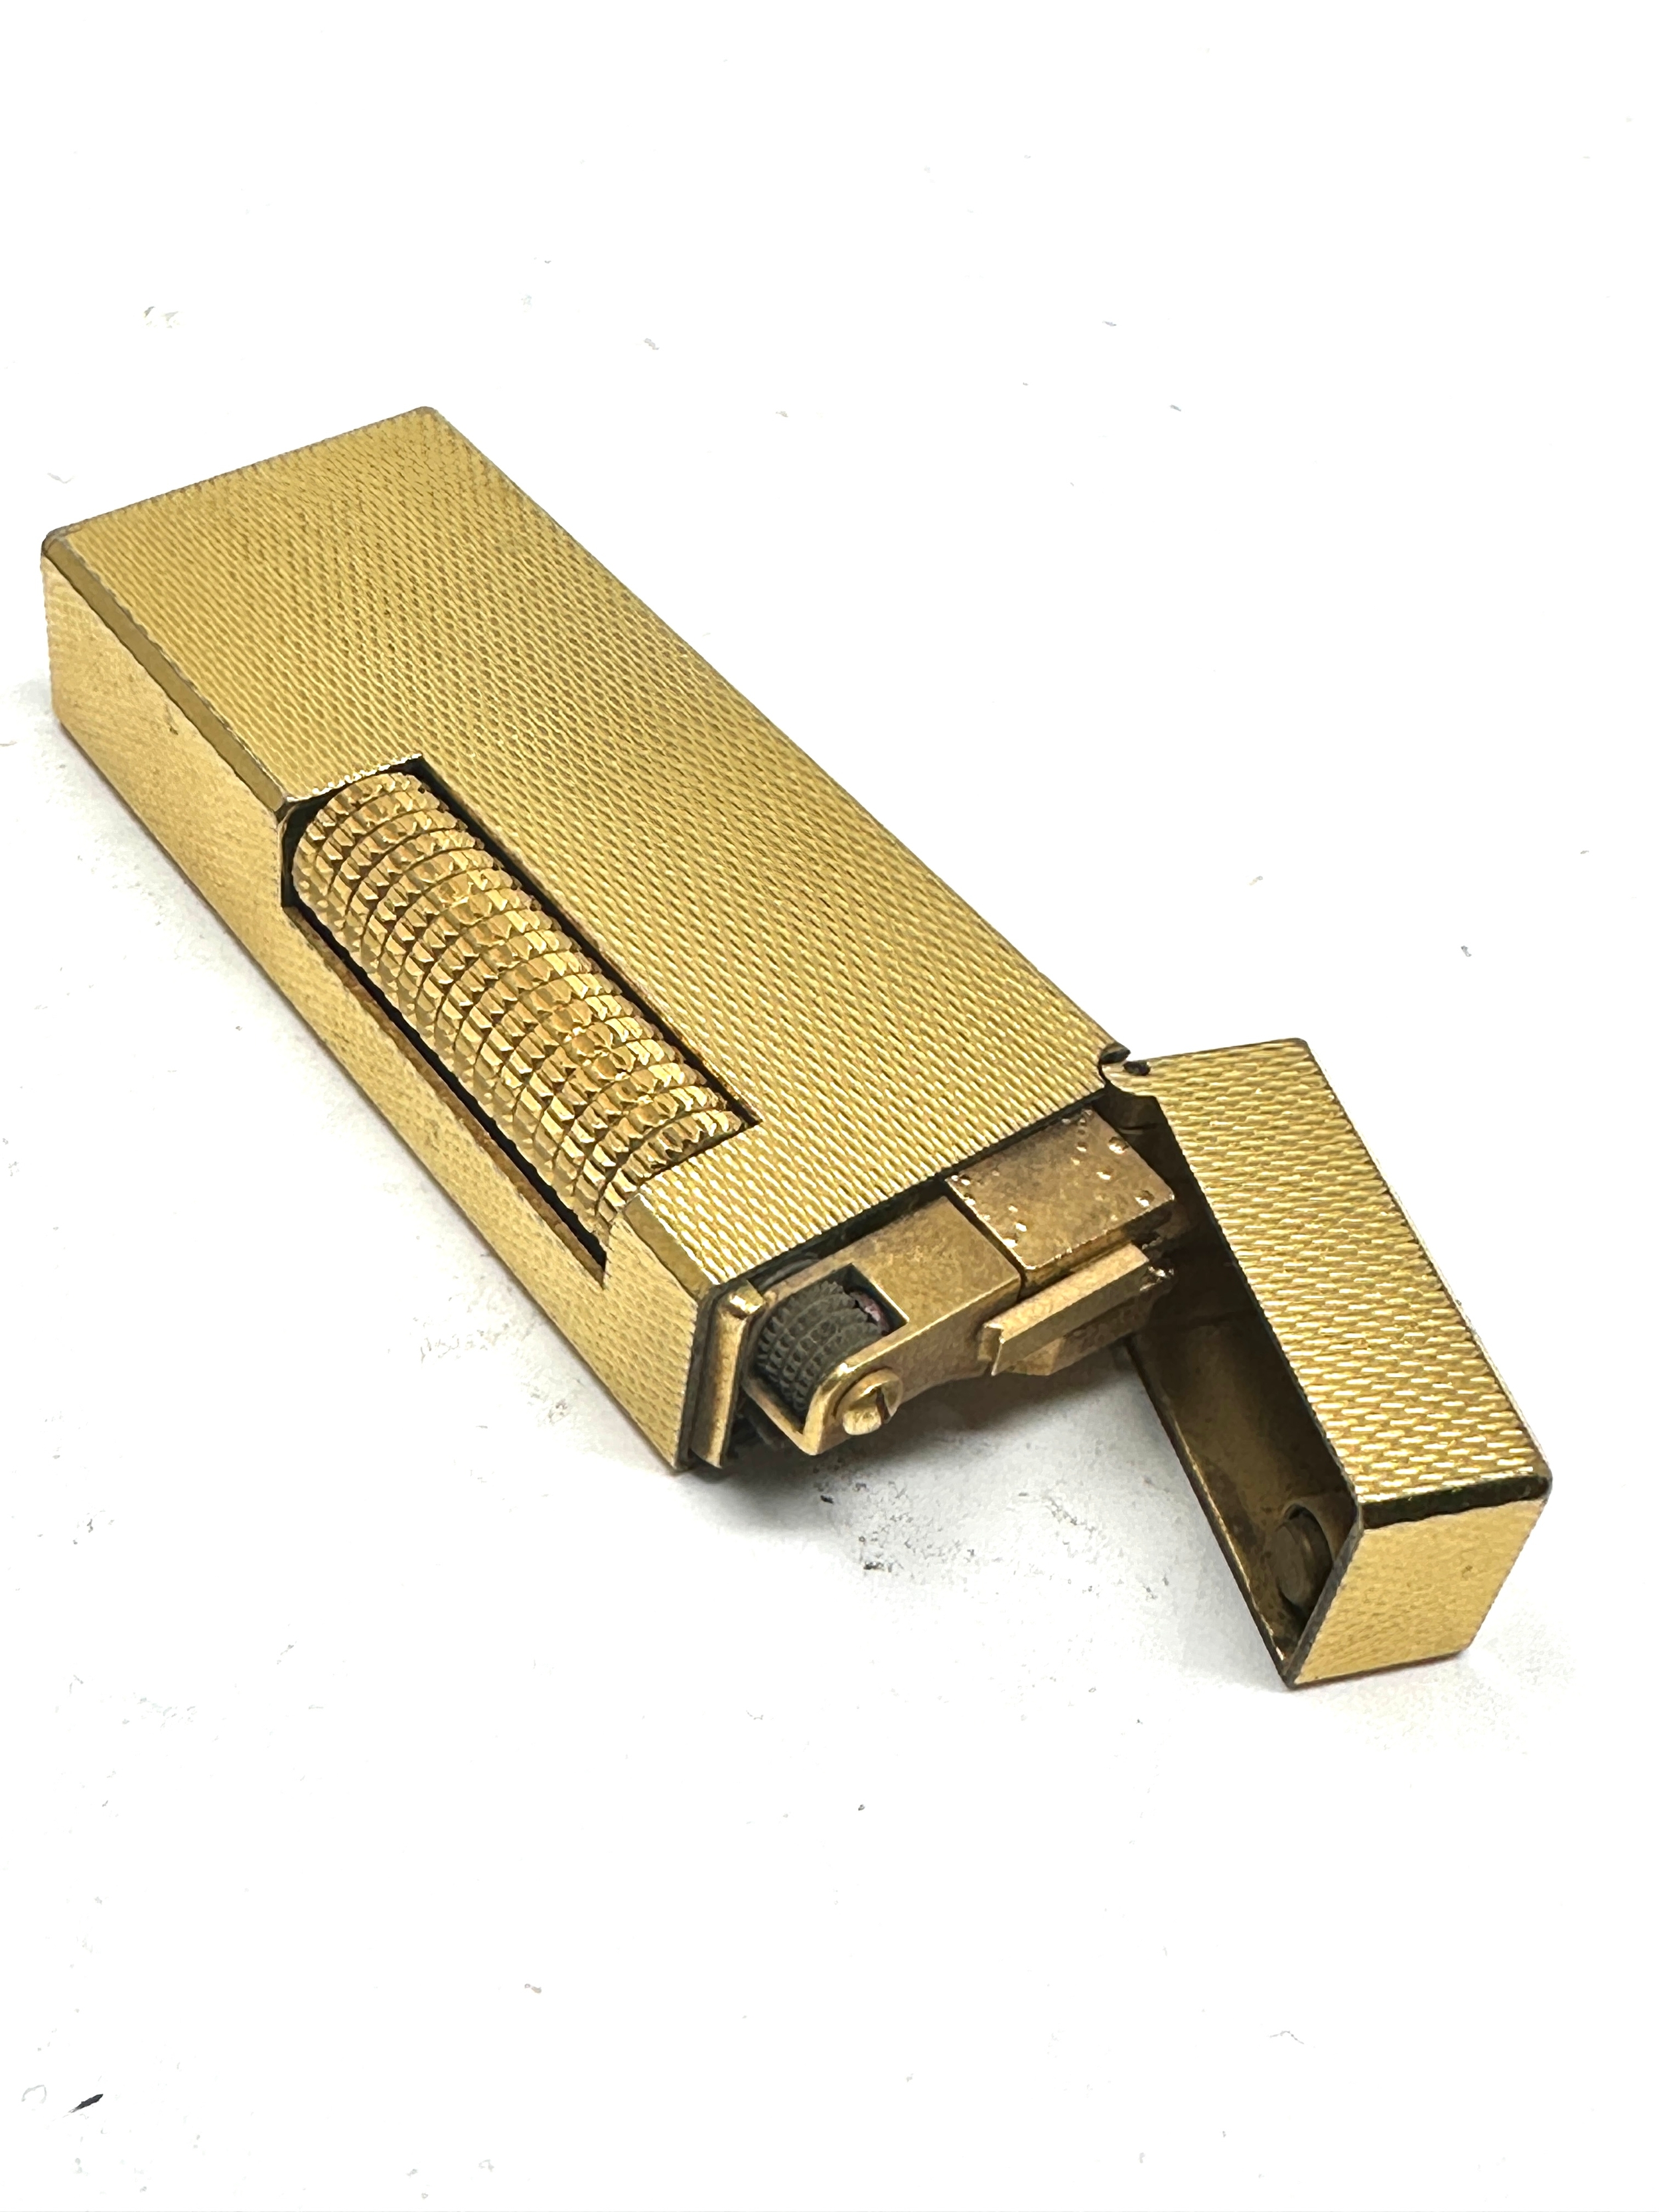 Vintage dunhill cigarette lighter - Image 3 of 4